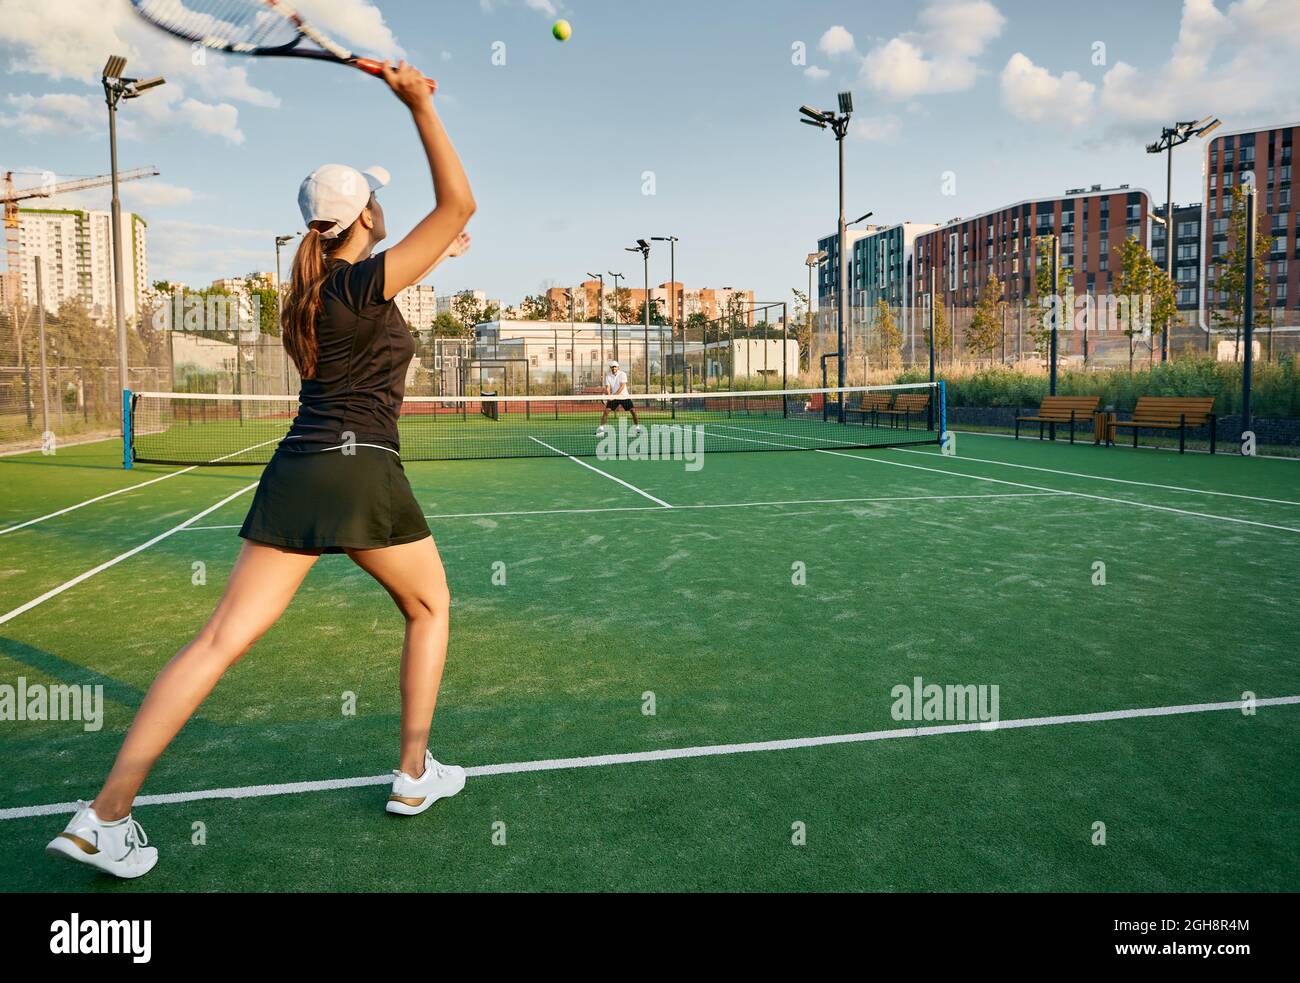 Die Tennisspielerin spielt mit ihrem männlichen Partner auf einem Rasenplatz in städtischer Umgebung Ball. Tennisspielerin mit Tennisschläger und Stockfoto